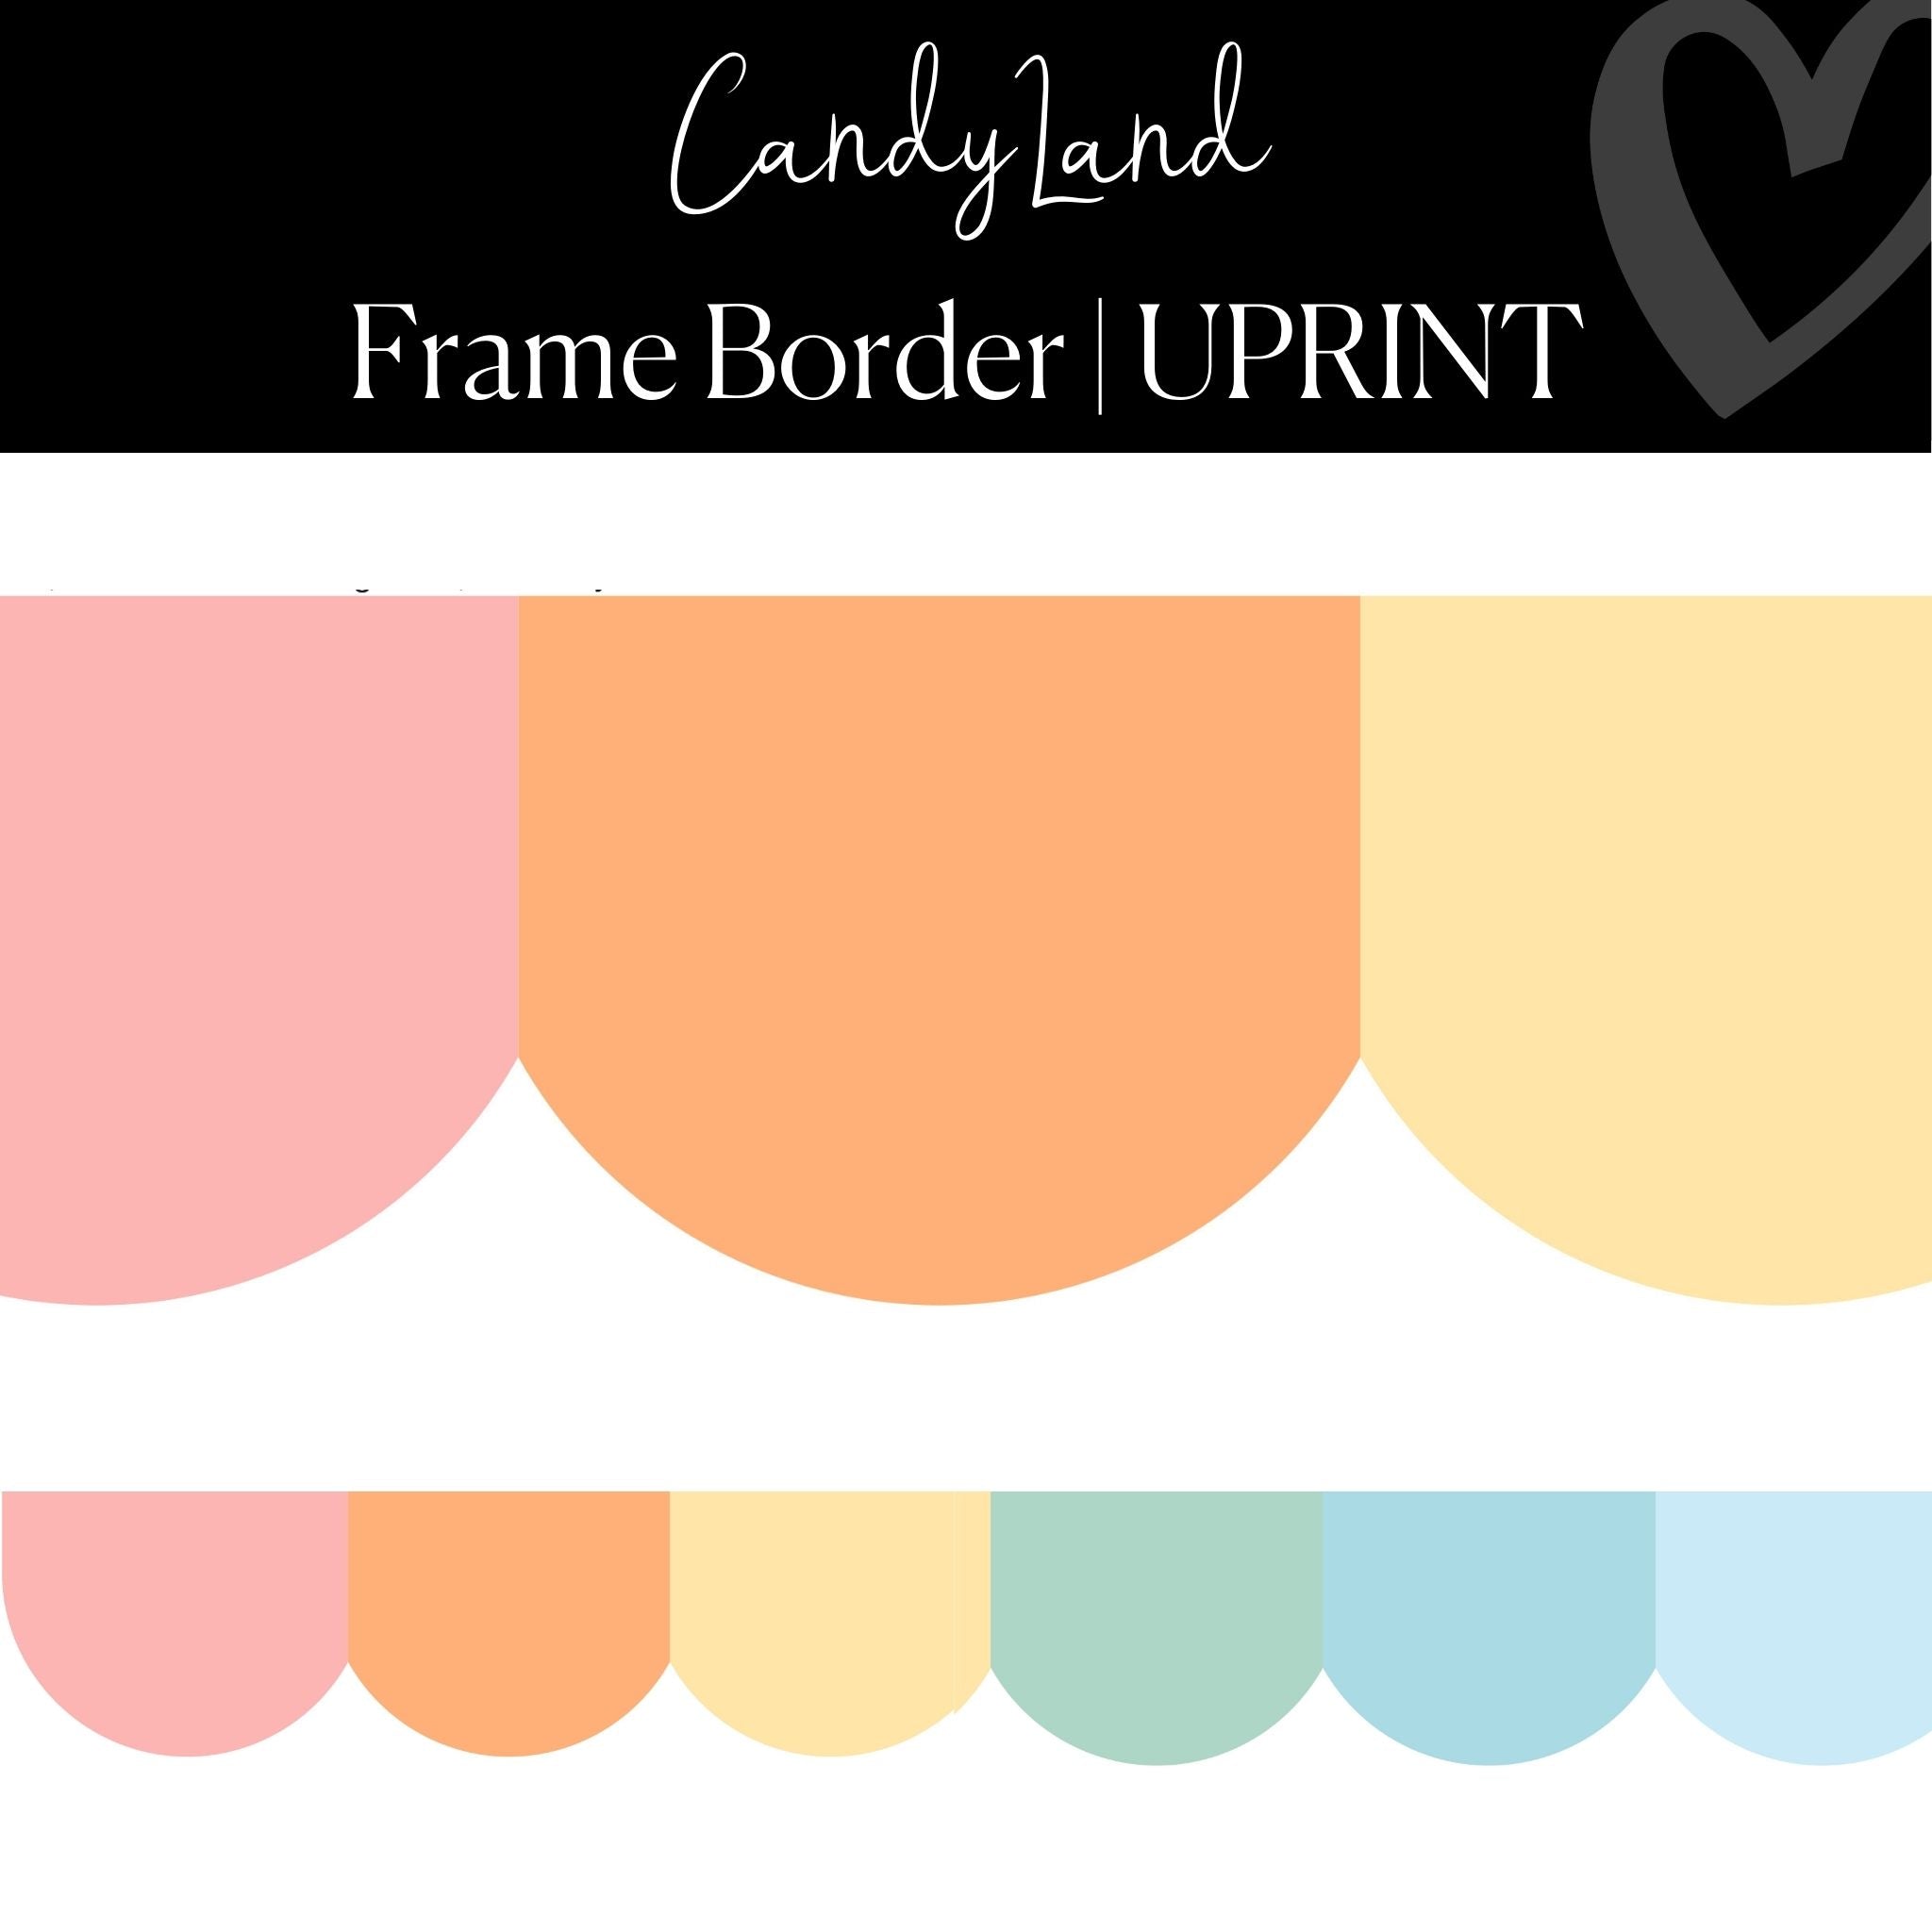 Rainbow Pom Border, Pastel Pom Frame Border